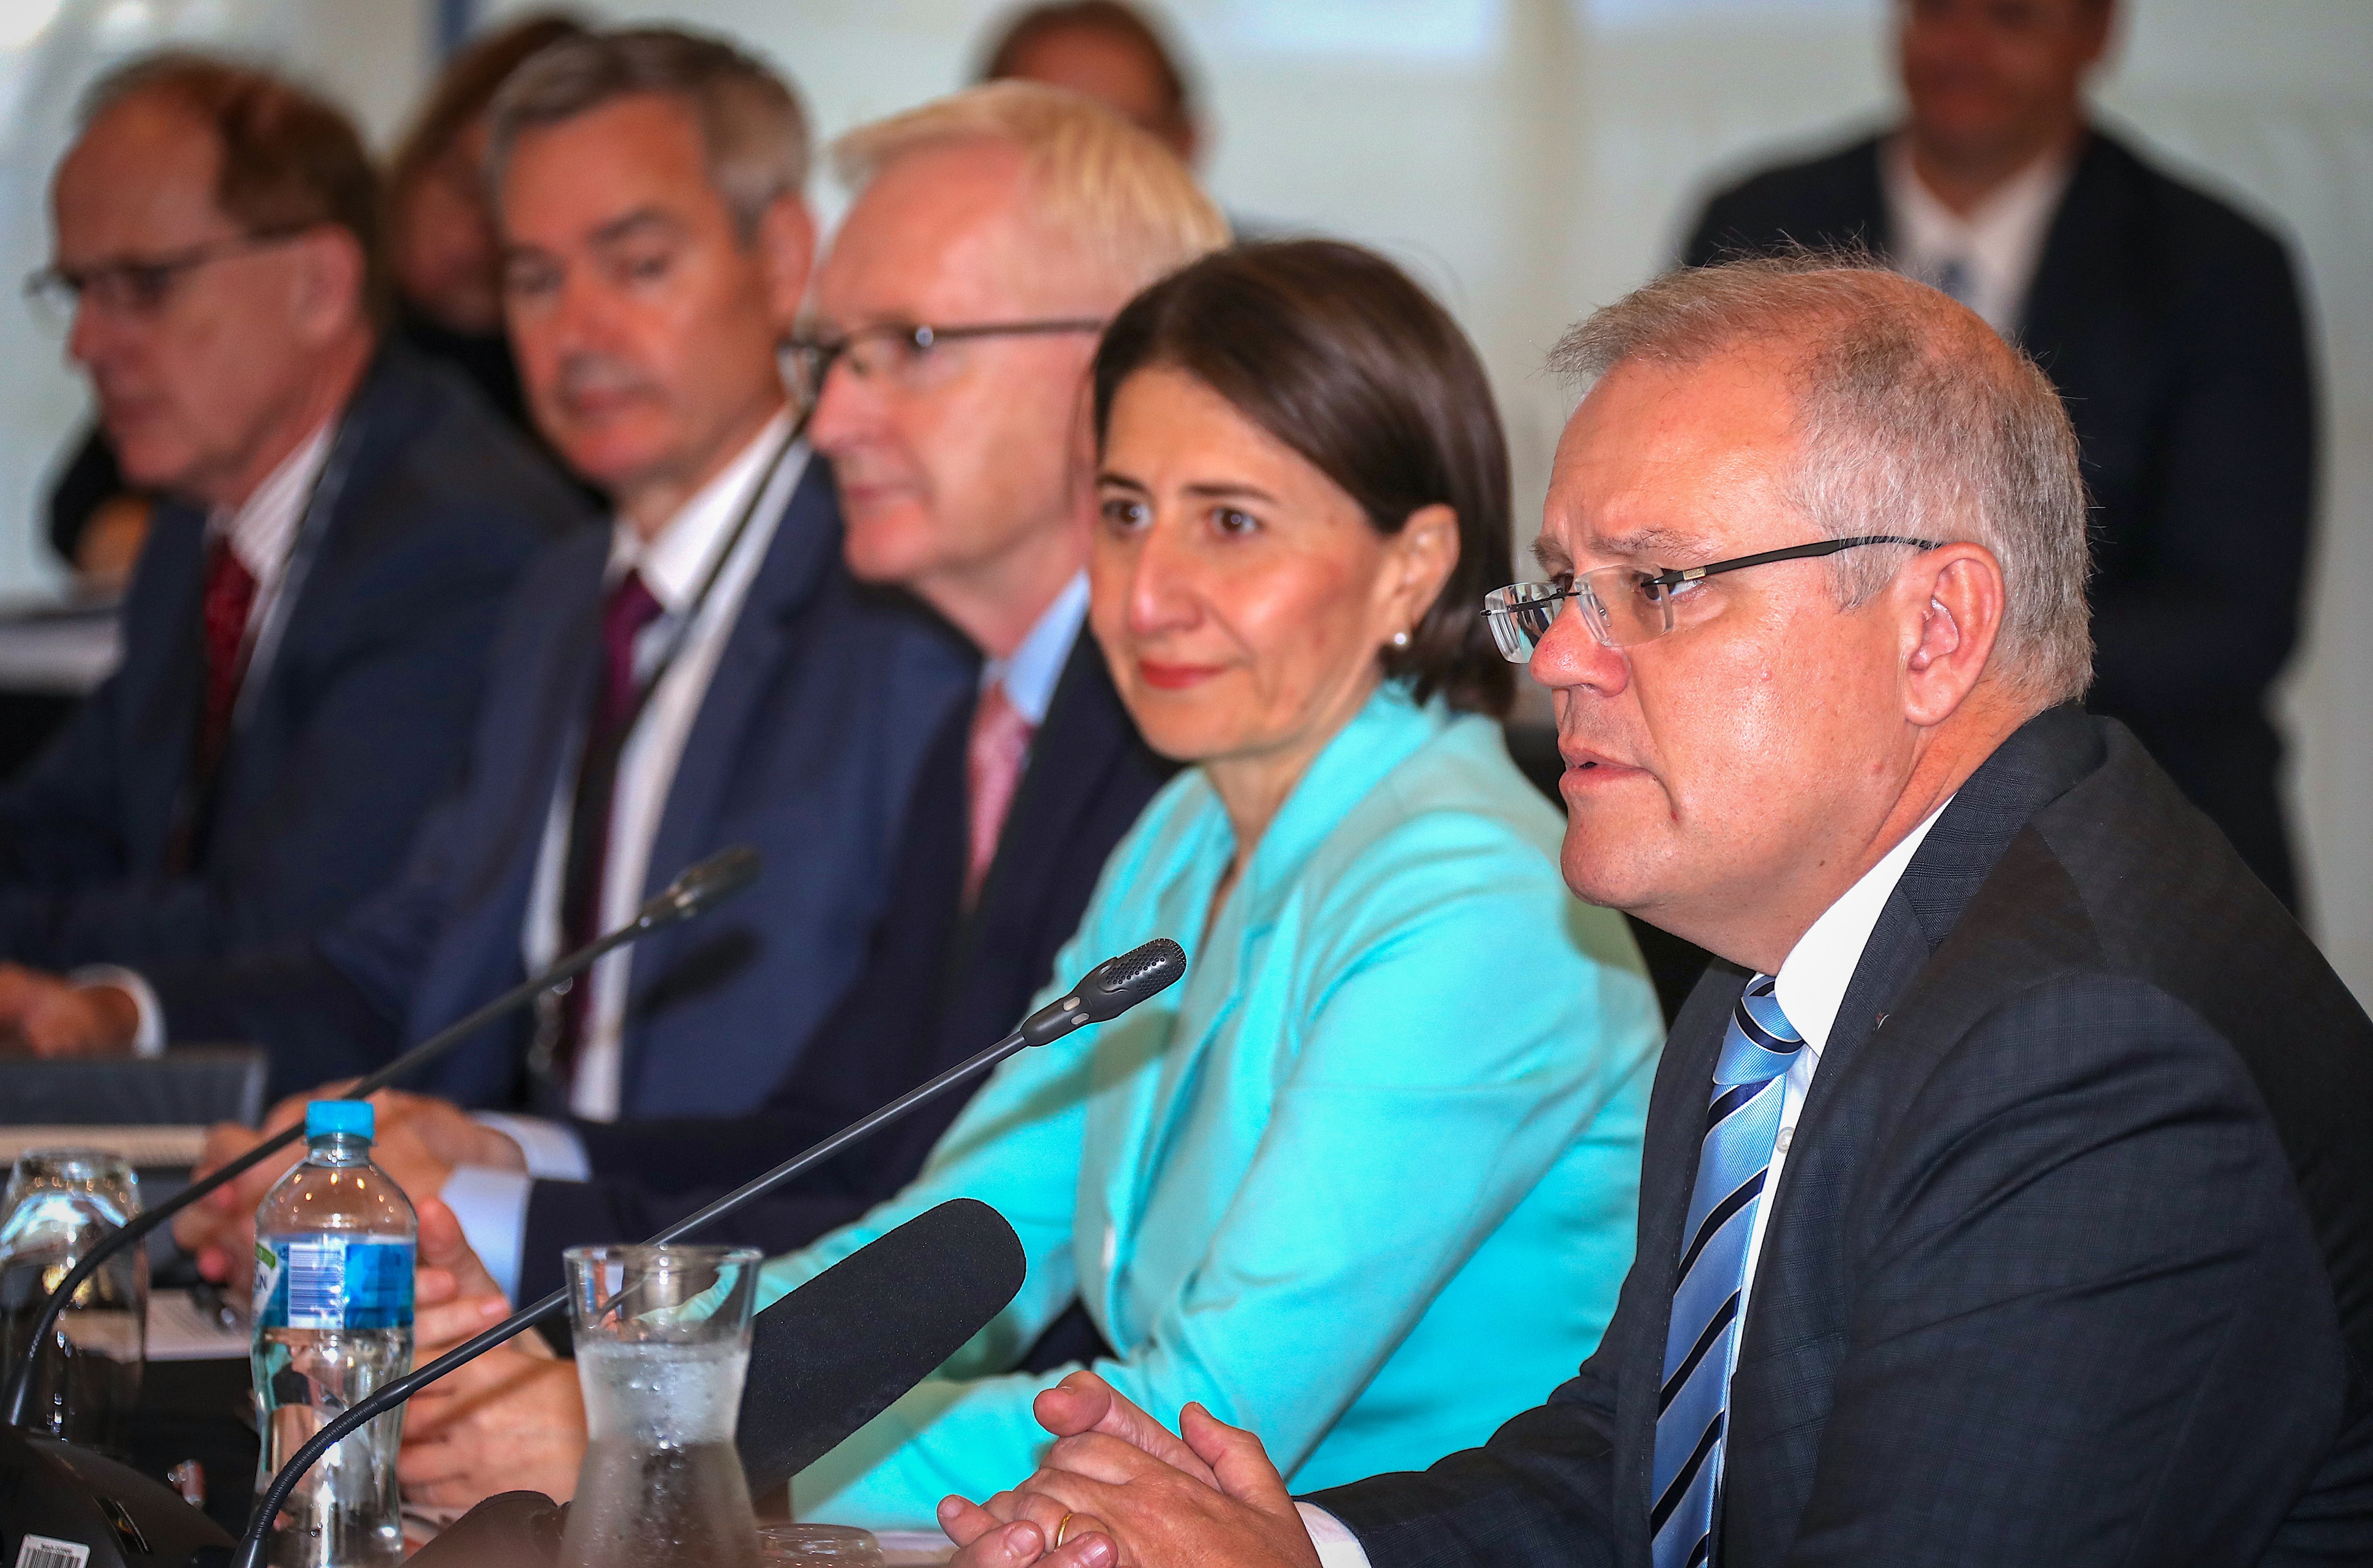 NSW Premier Gladys Berejiklian (second from right) listens as Australian Prime Minister Scott Morrison (right) speaks during the COAG meeting in Sydney.